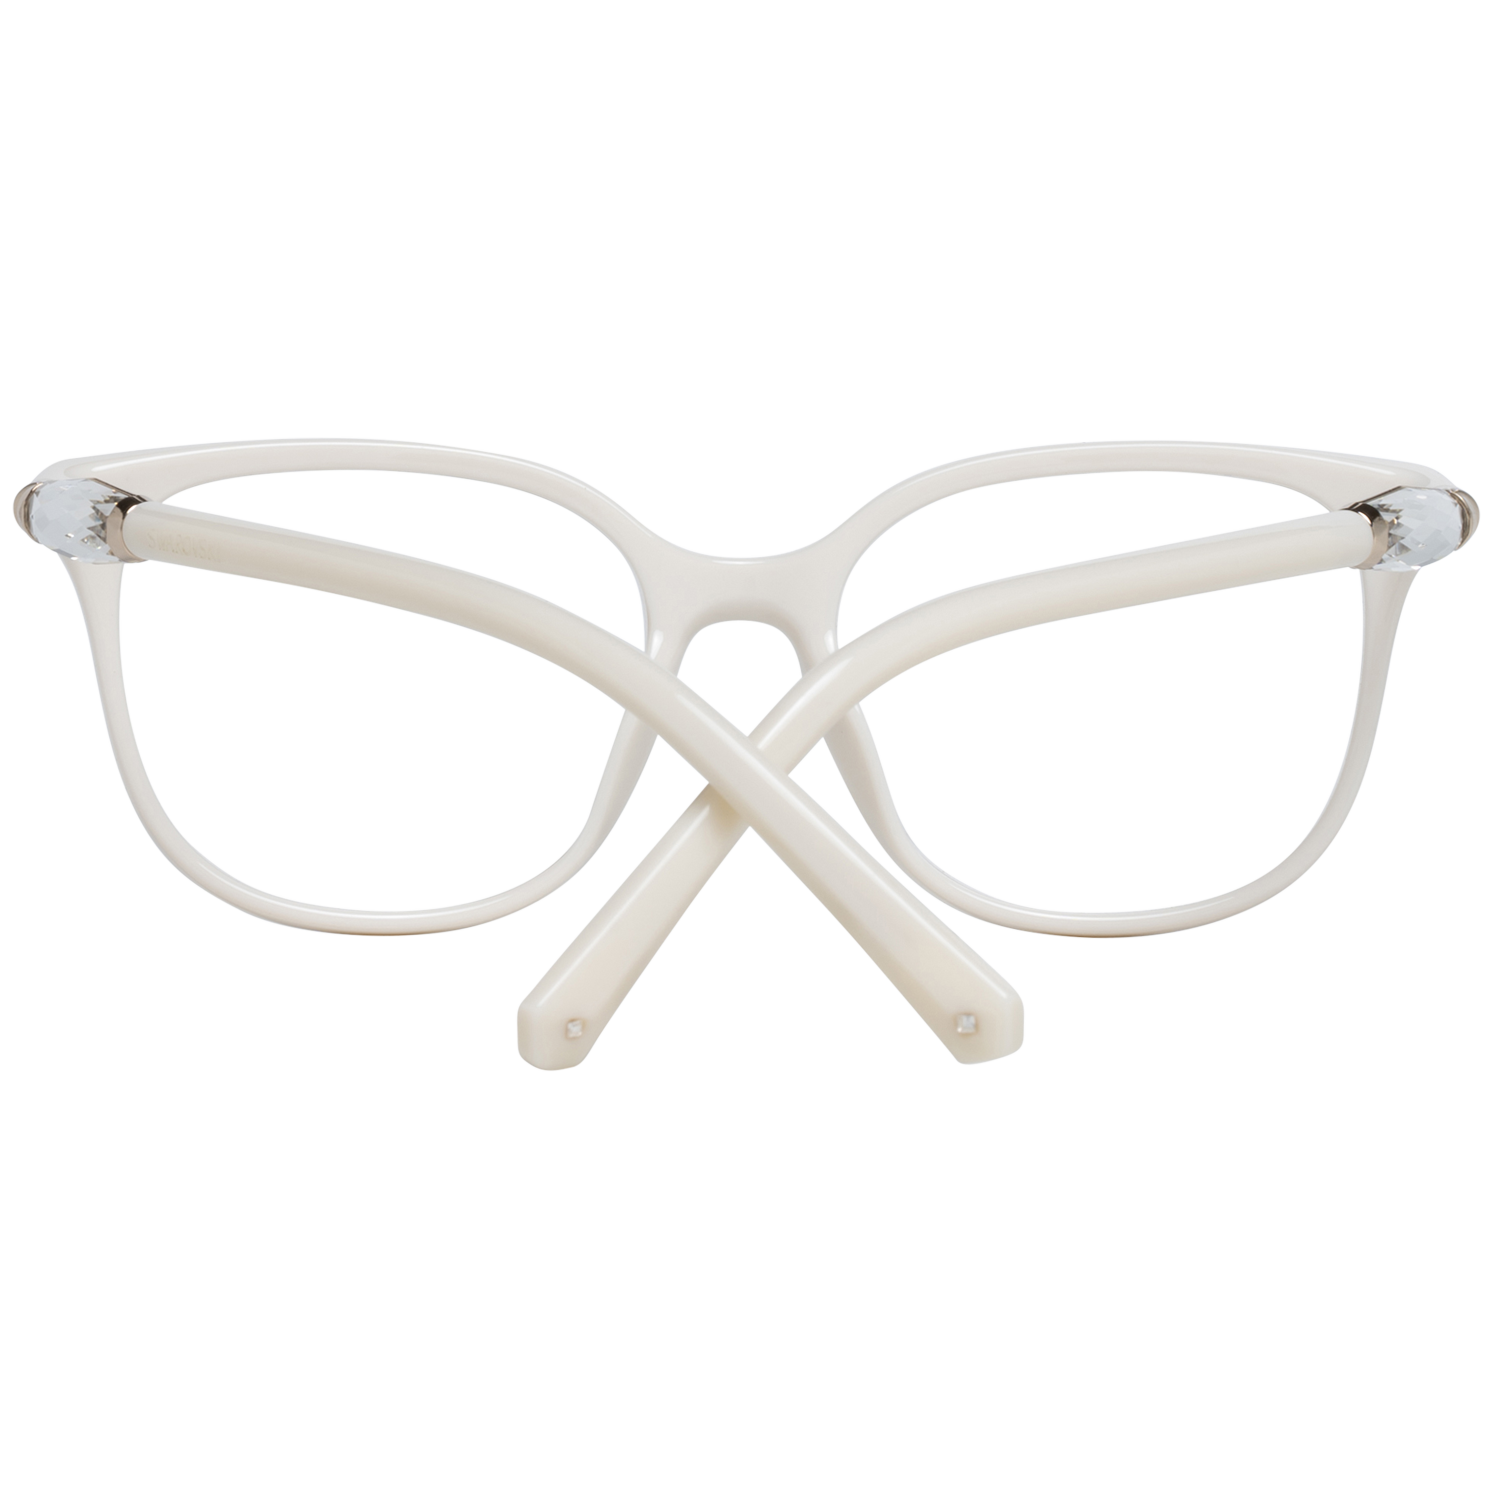 Swarovski Frames Swarovski Women Glasses Optical Frame SK5321 021 52 Eyeglasses Eyewear UK USA Australia 